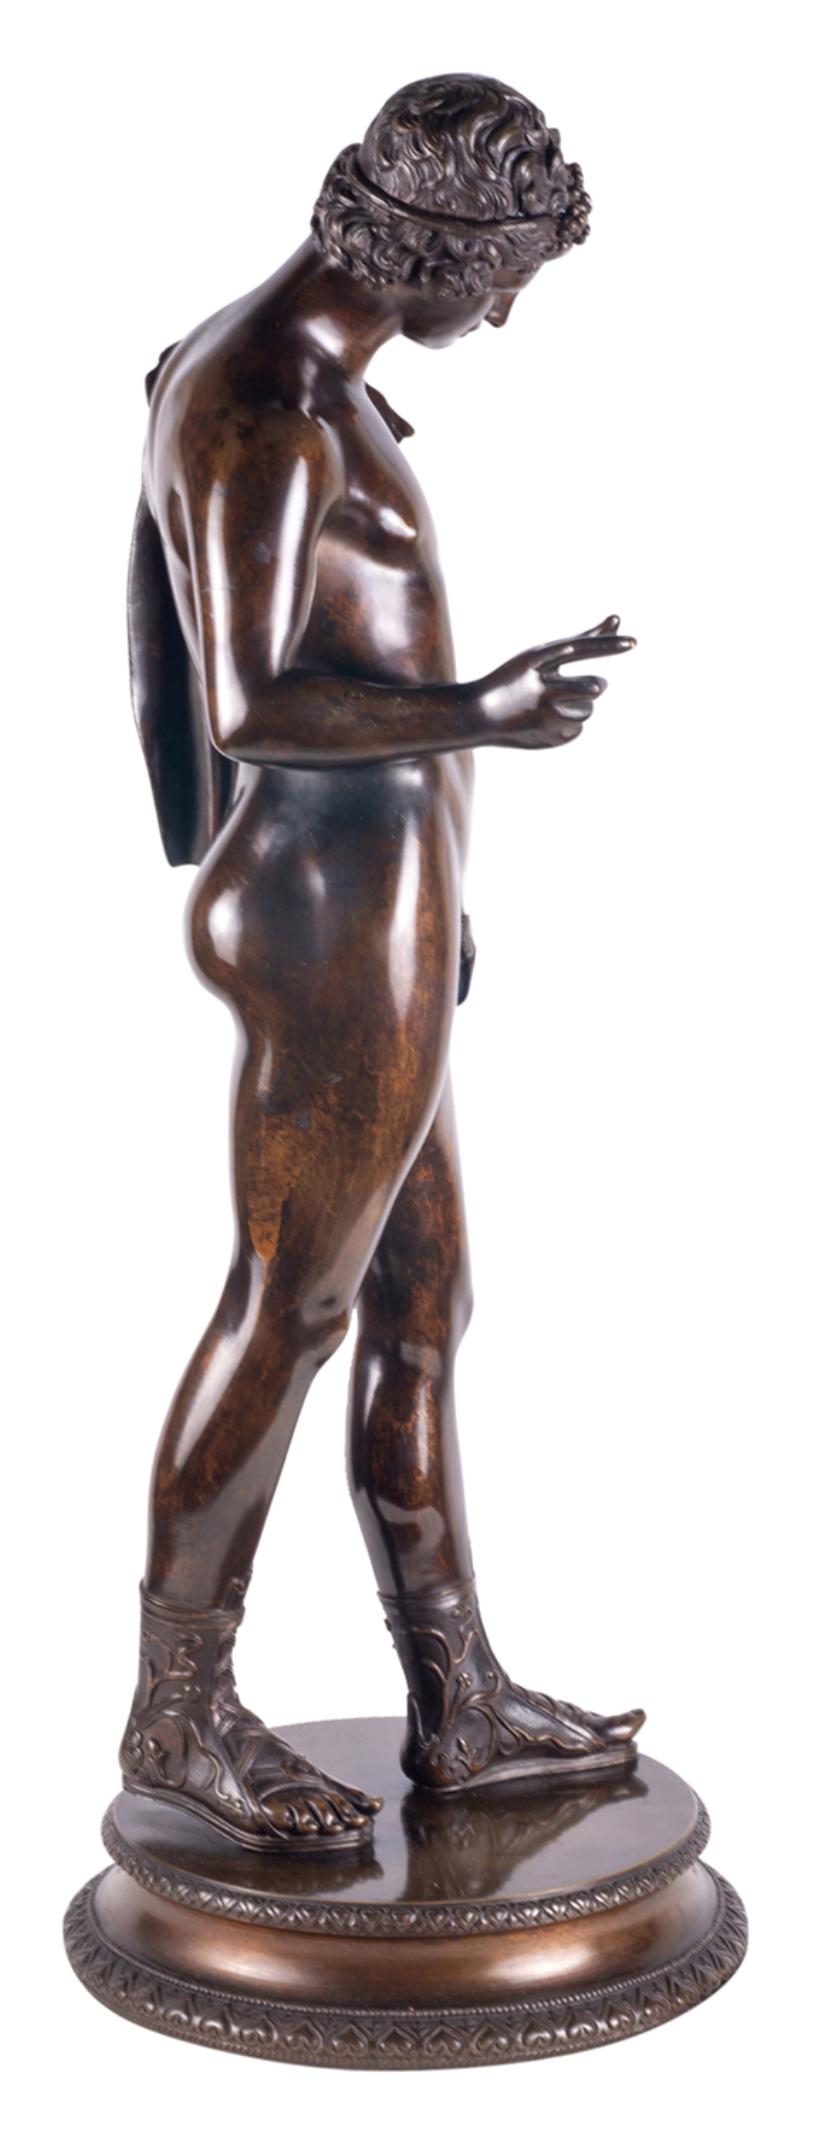 Très belle figure de Narcisse en bronze patiné du Grand Tour, datant du dernier quart du XIXe siècle.

Dans la mythologie grecque, Narcisse était un chasseur qui se distinguait par sa beauté.

Cette figure classique en bronze bien patiné est